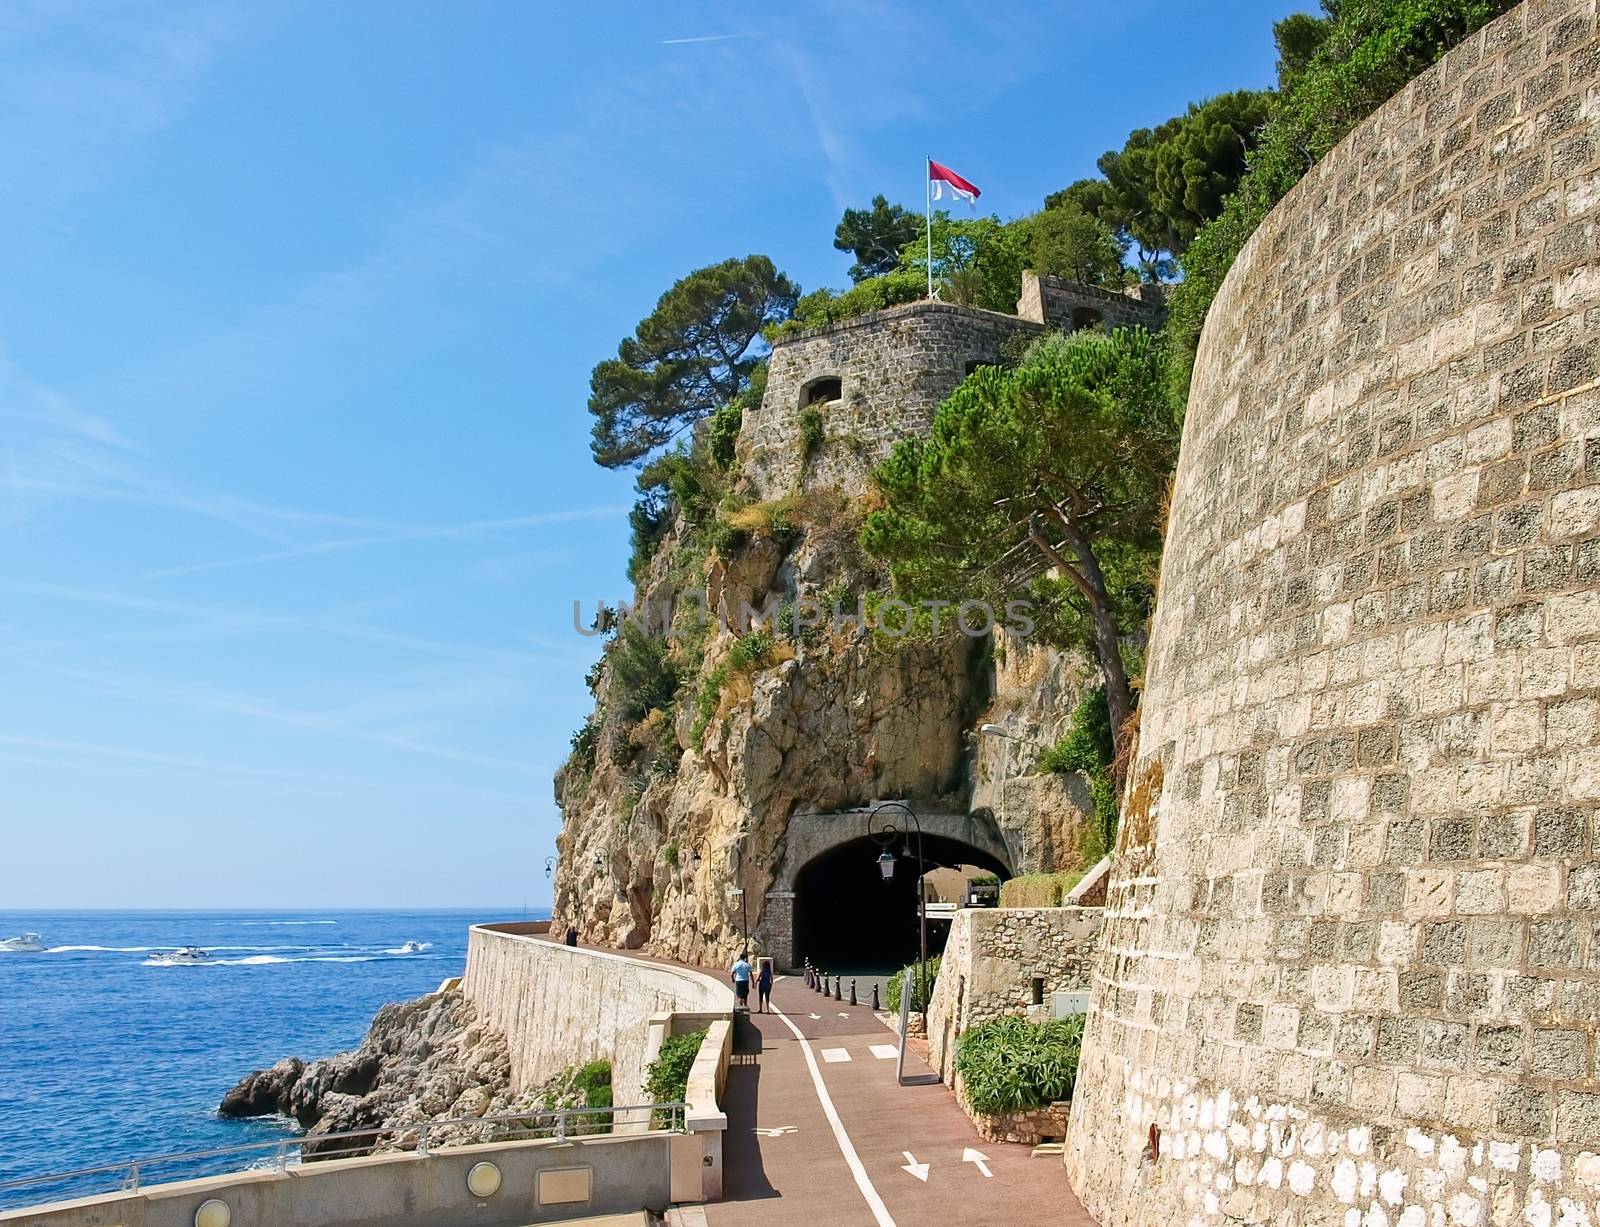 Tunnel to Monaco, Monte-Carlo.